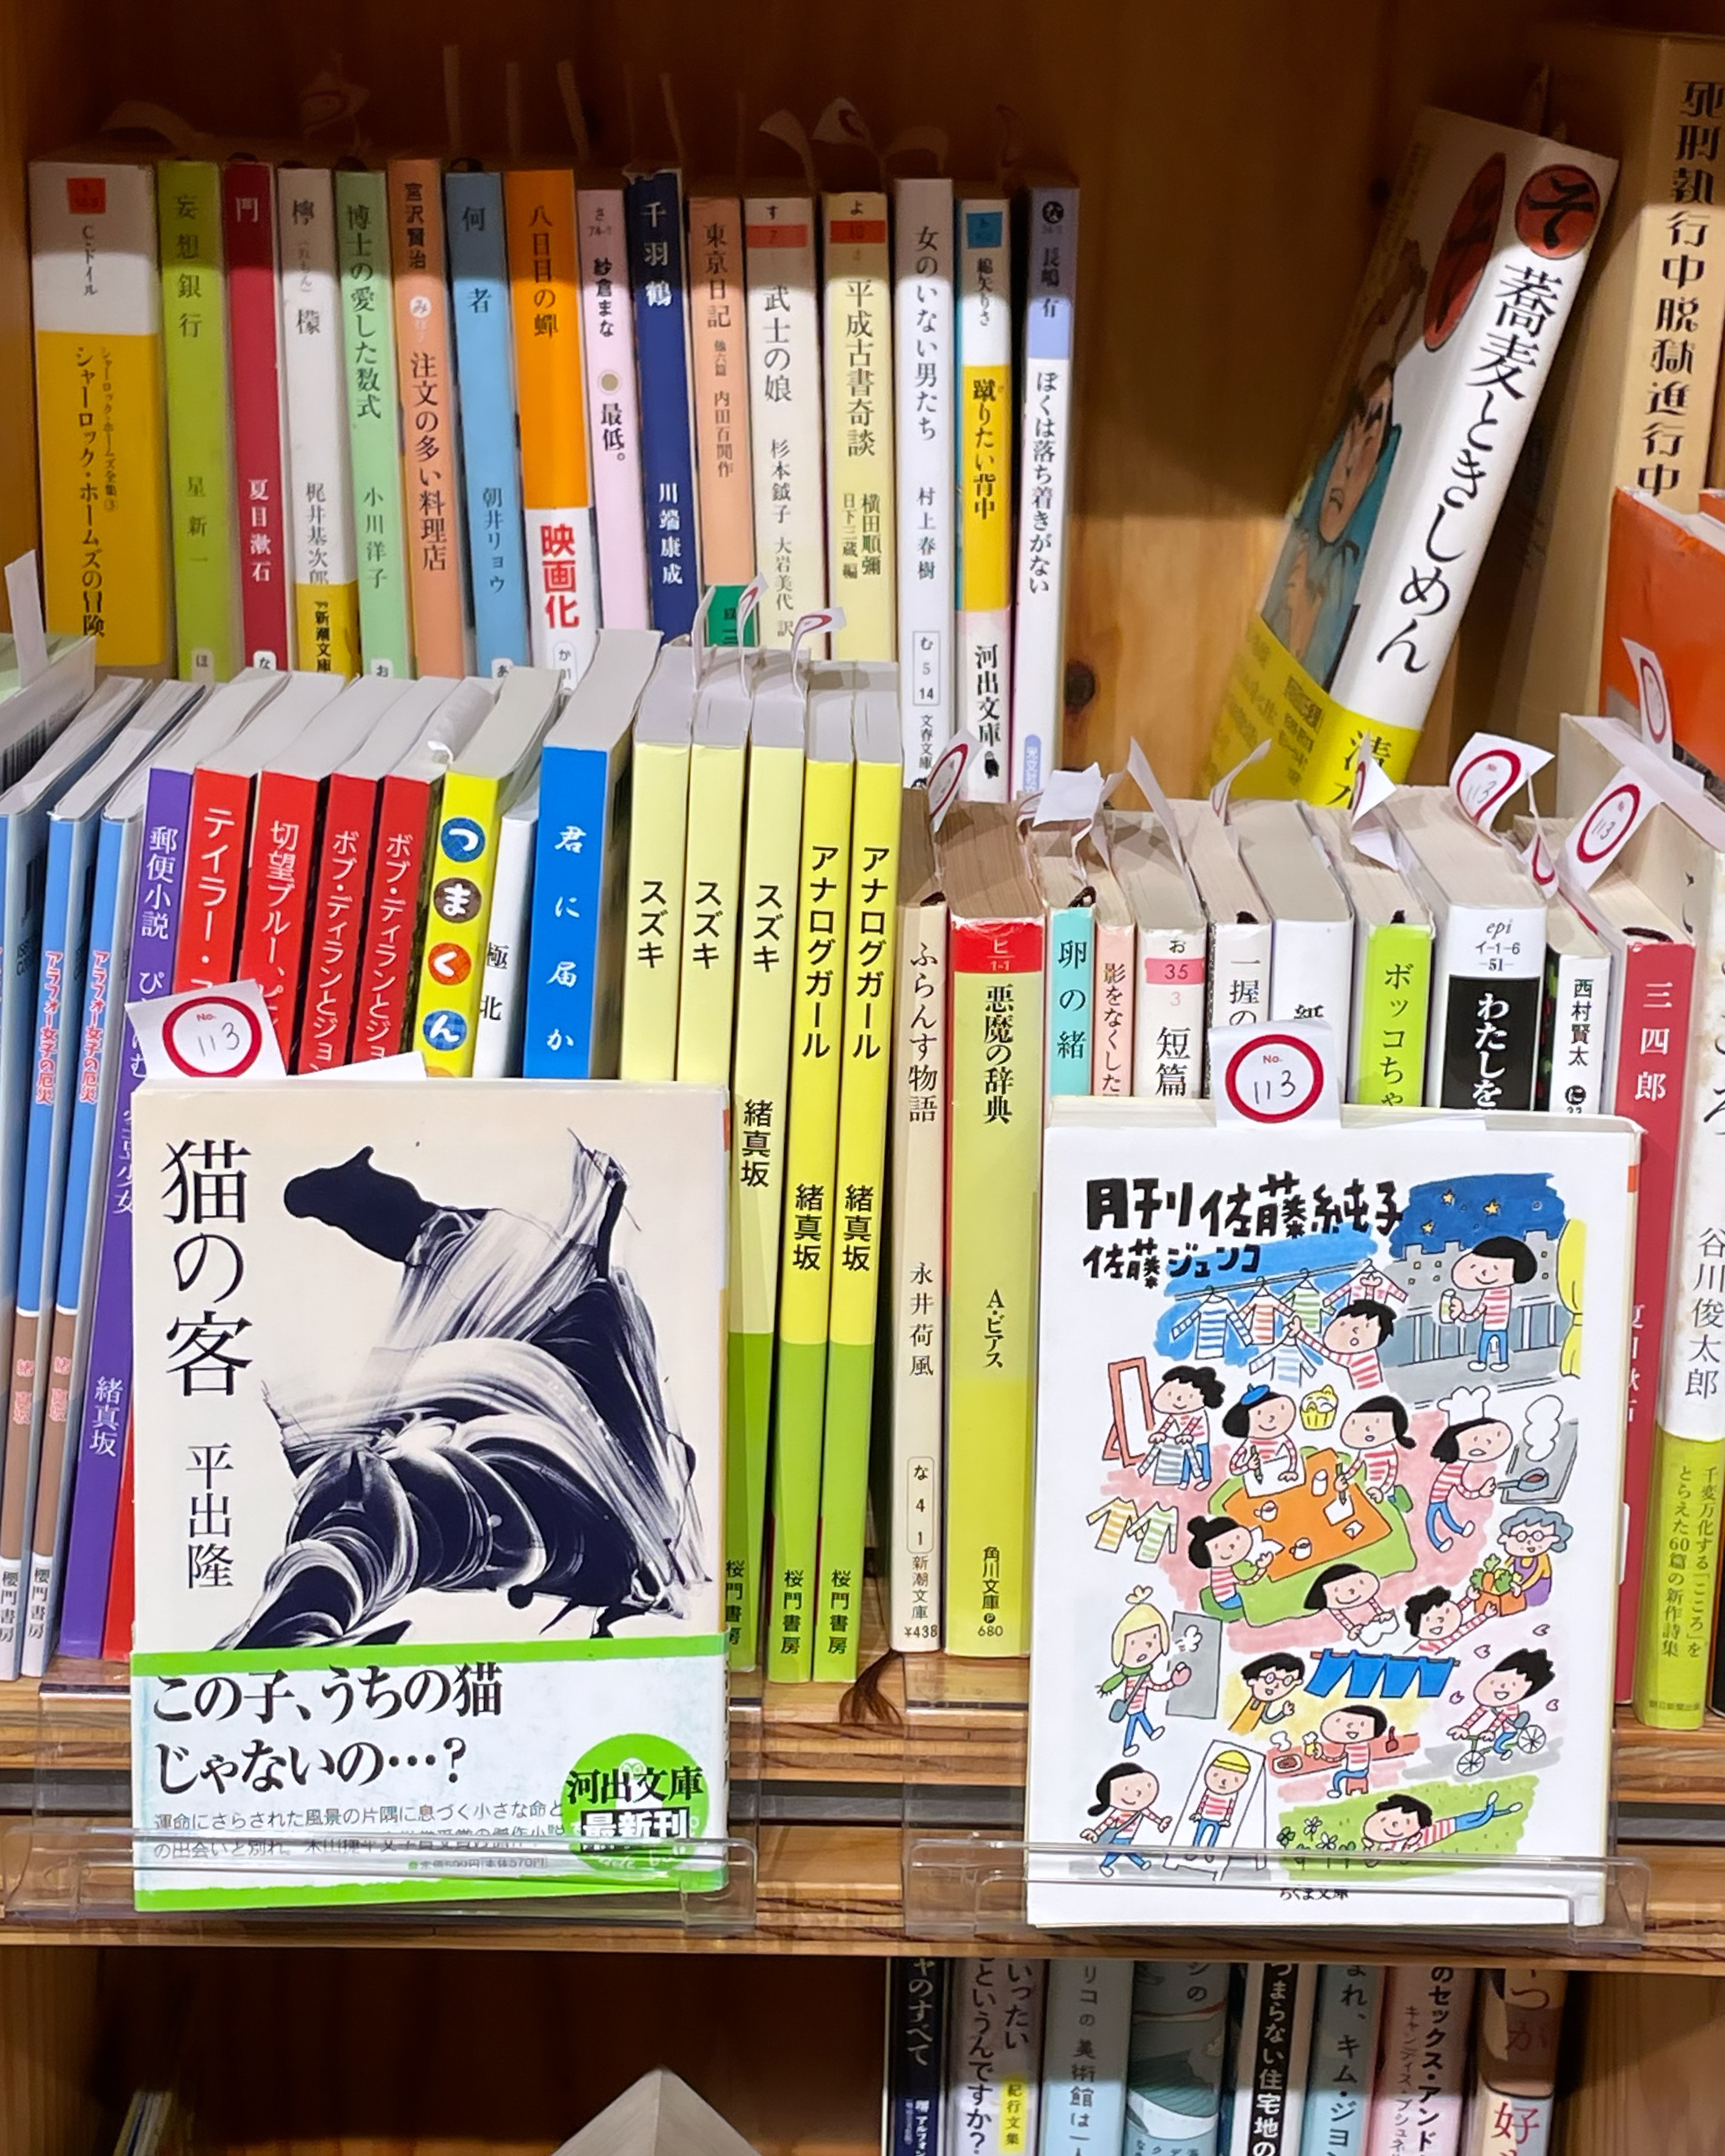 渋谷〇〇書店、めがね書店の棚の本を入れ替えました